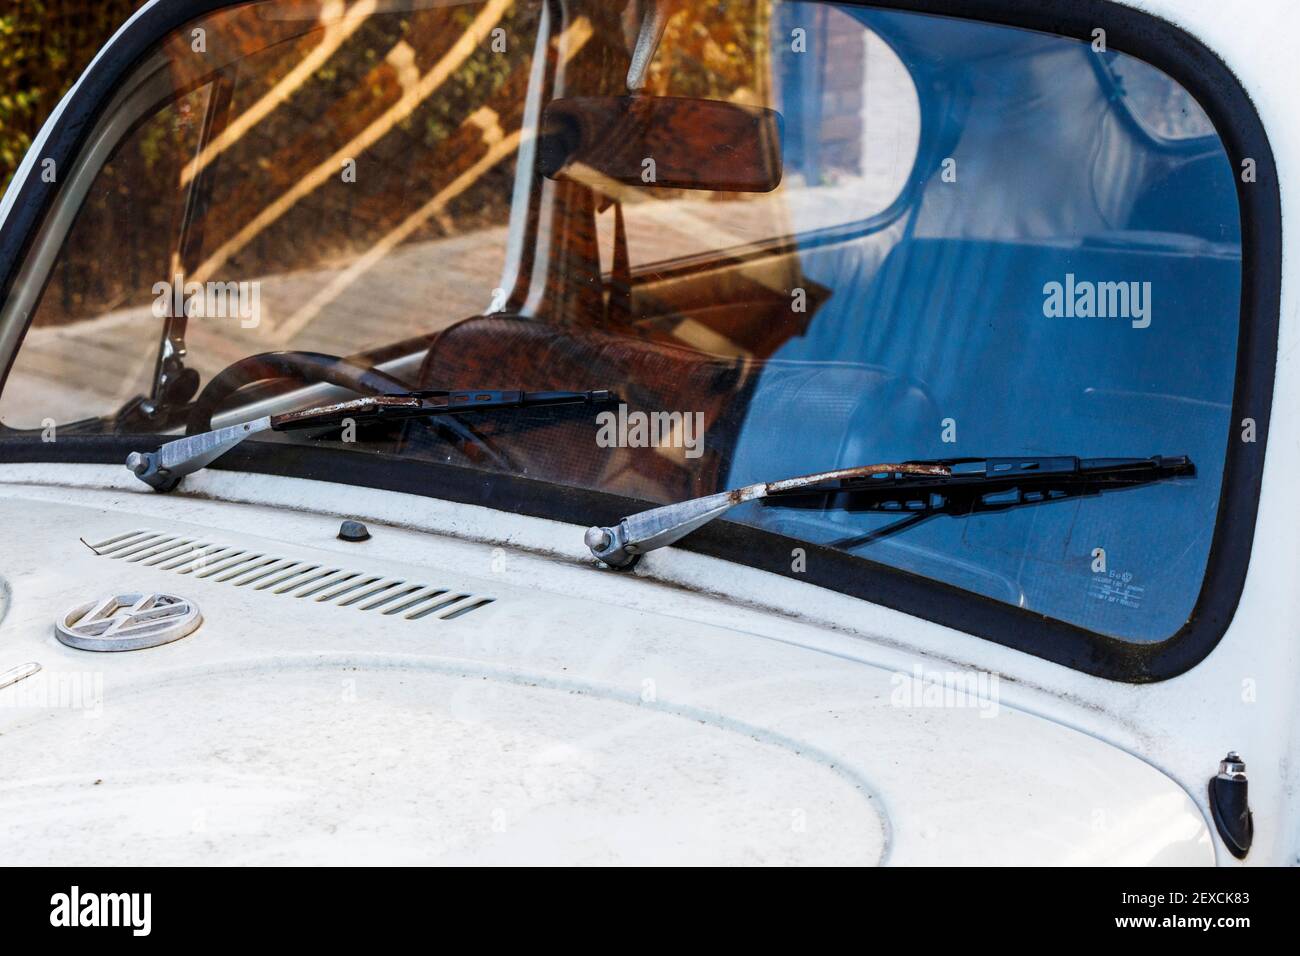 Nahaufnahme der Windschutzscheibe und der Scheibenwischer eines  schmutzigen, weiß lackierten Volkswagen Beetle Autos, London, UK  Stockfotografie - Alamy